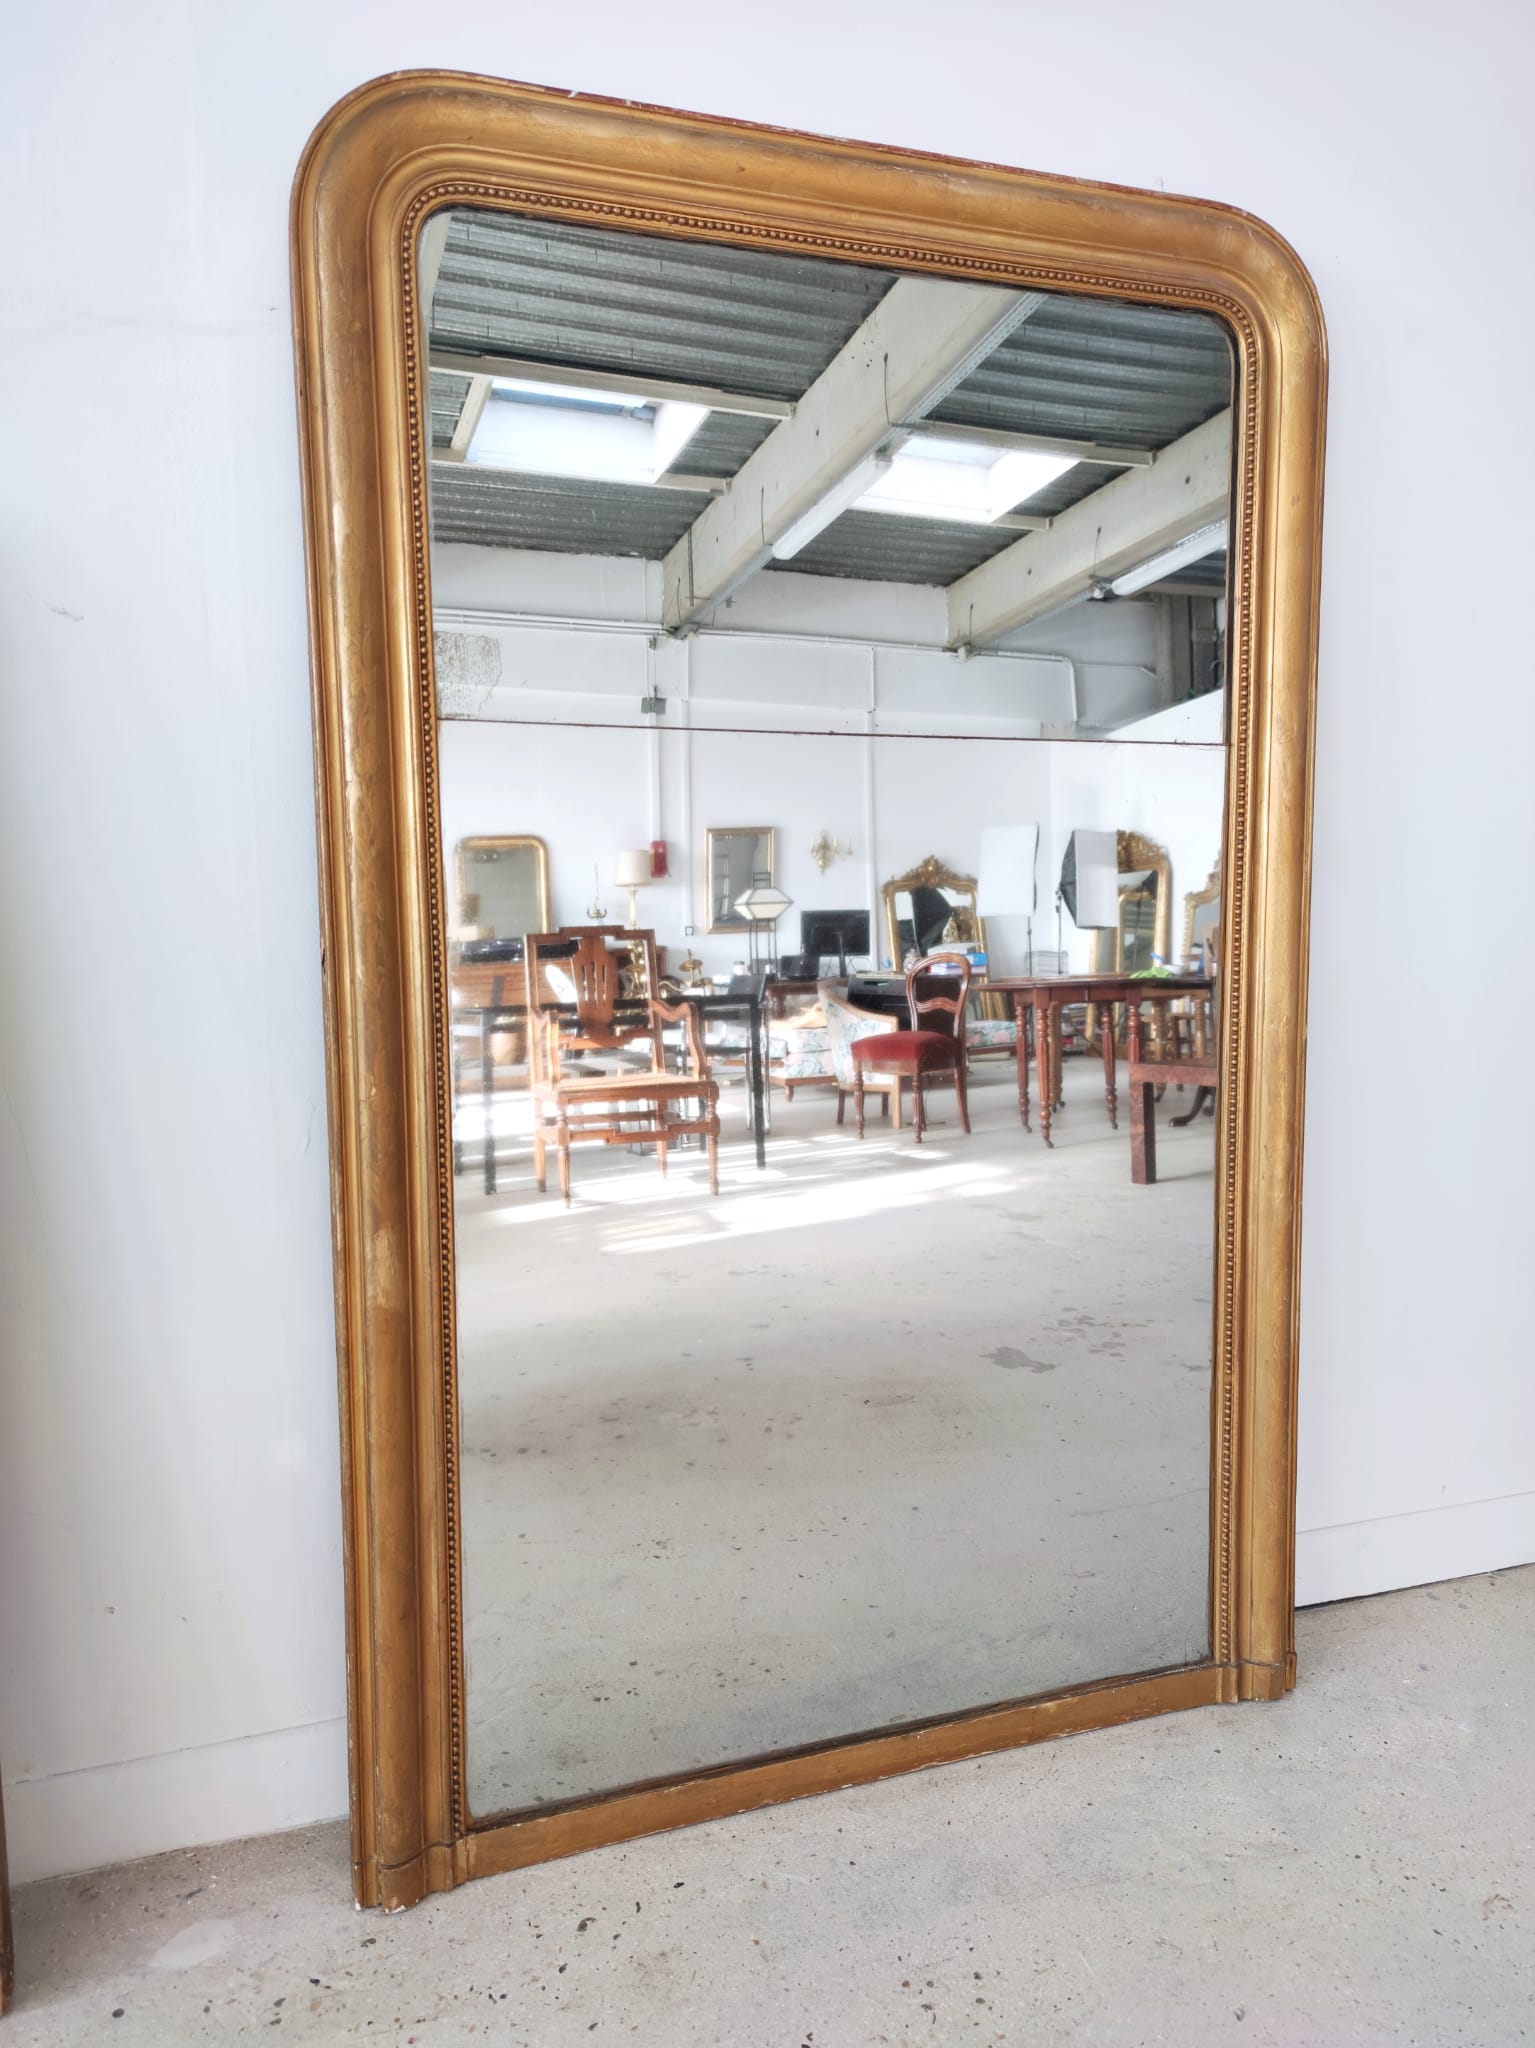 Ancien miroir de cheminée de style Louis Philippe double glace au mercure cadre redoré XIXème H: 1m48